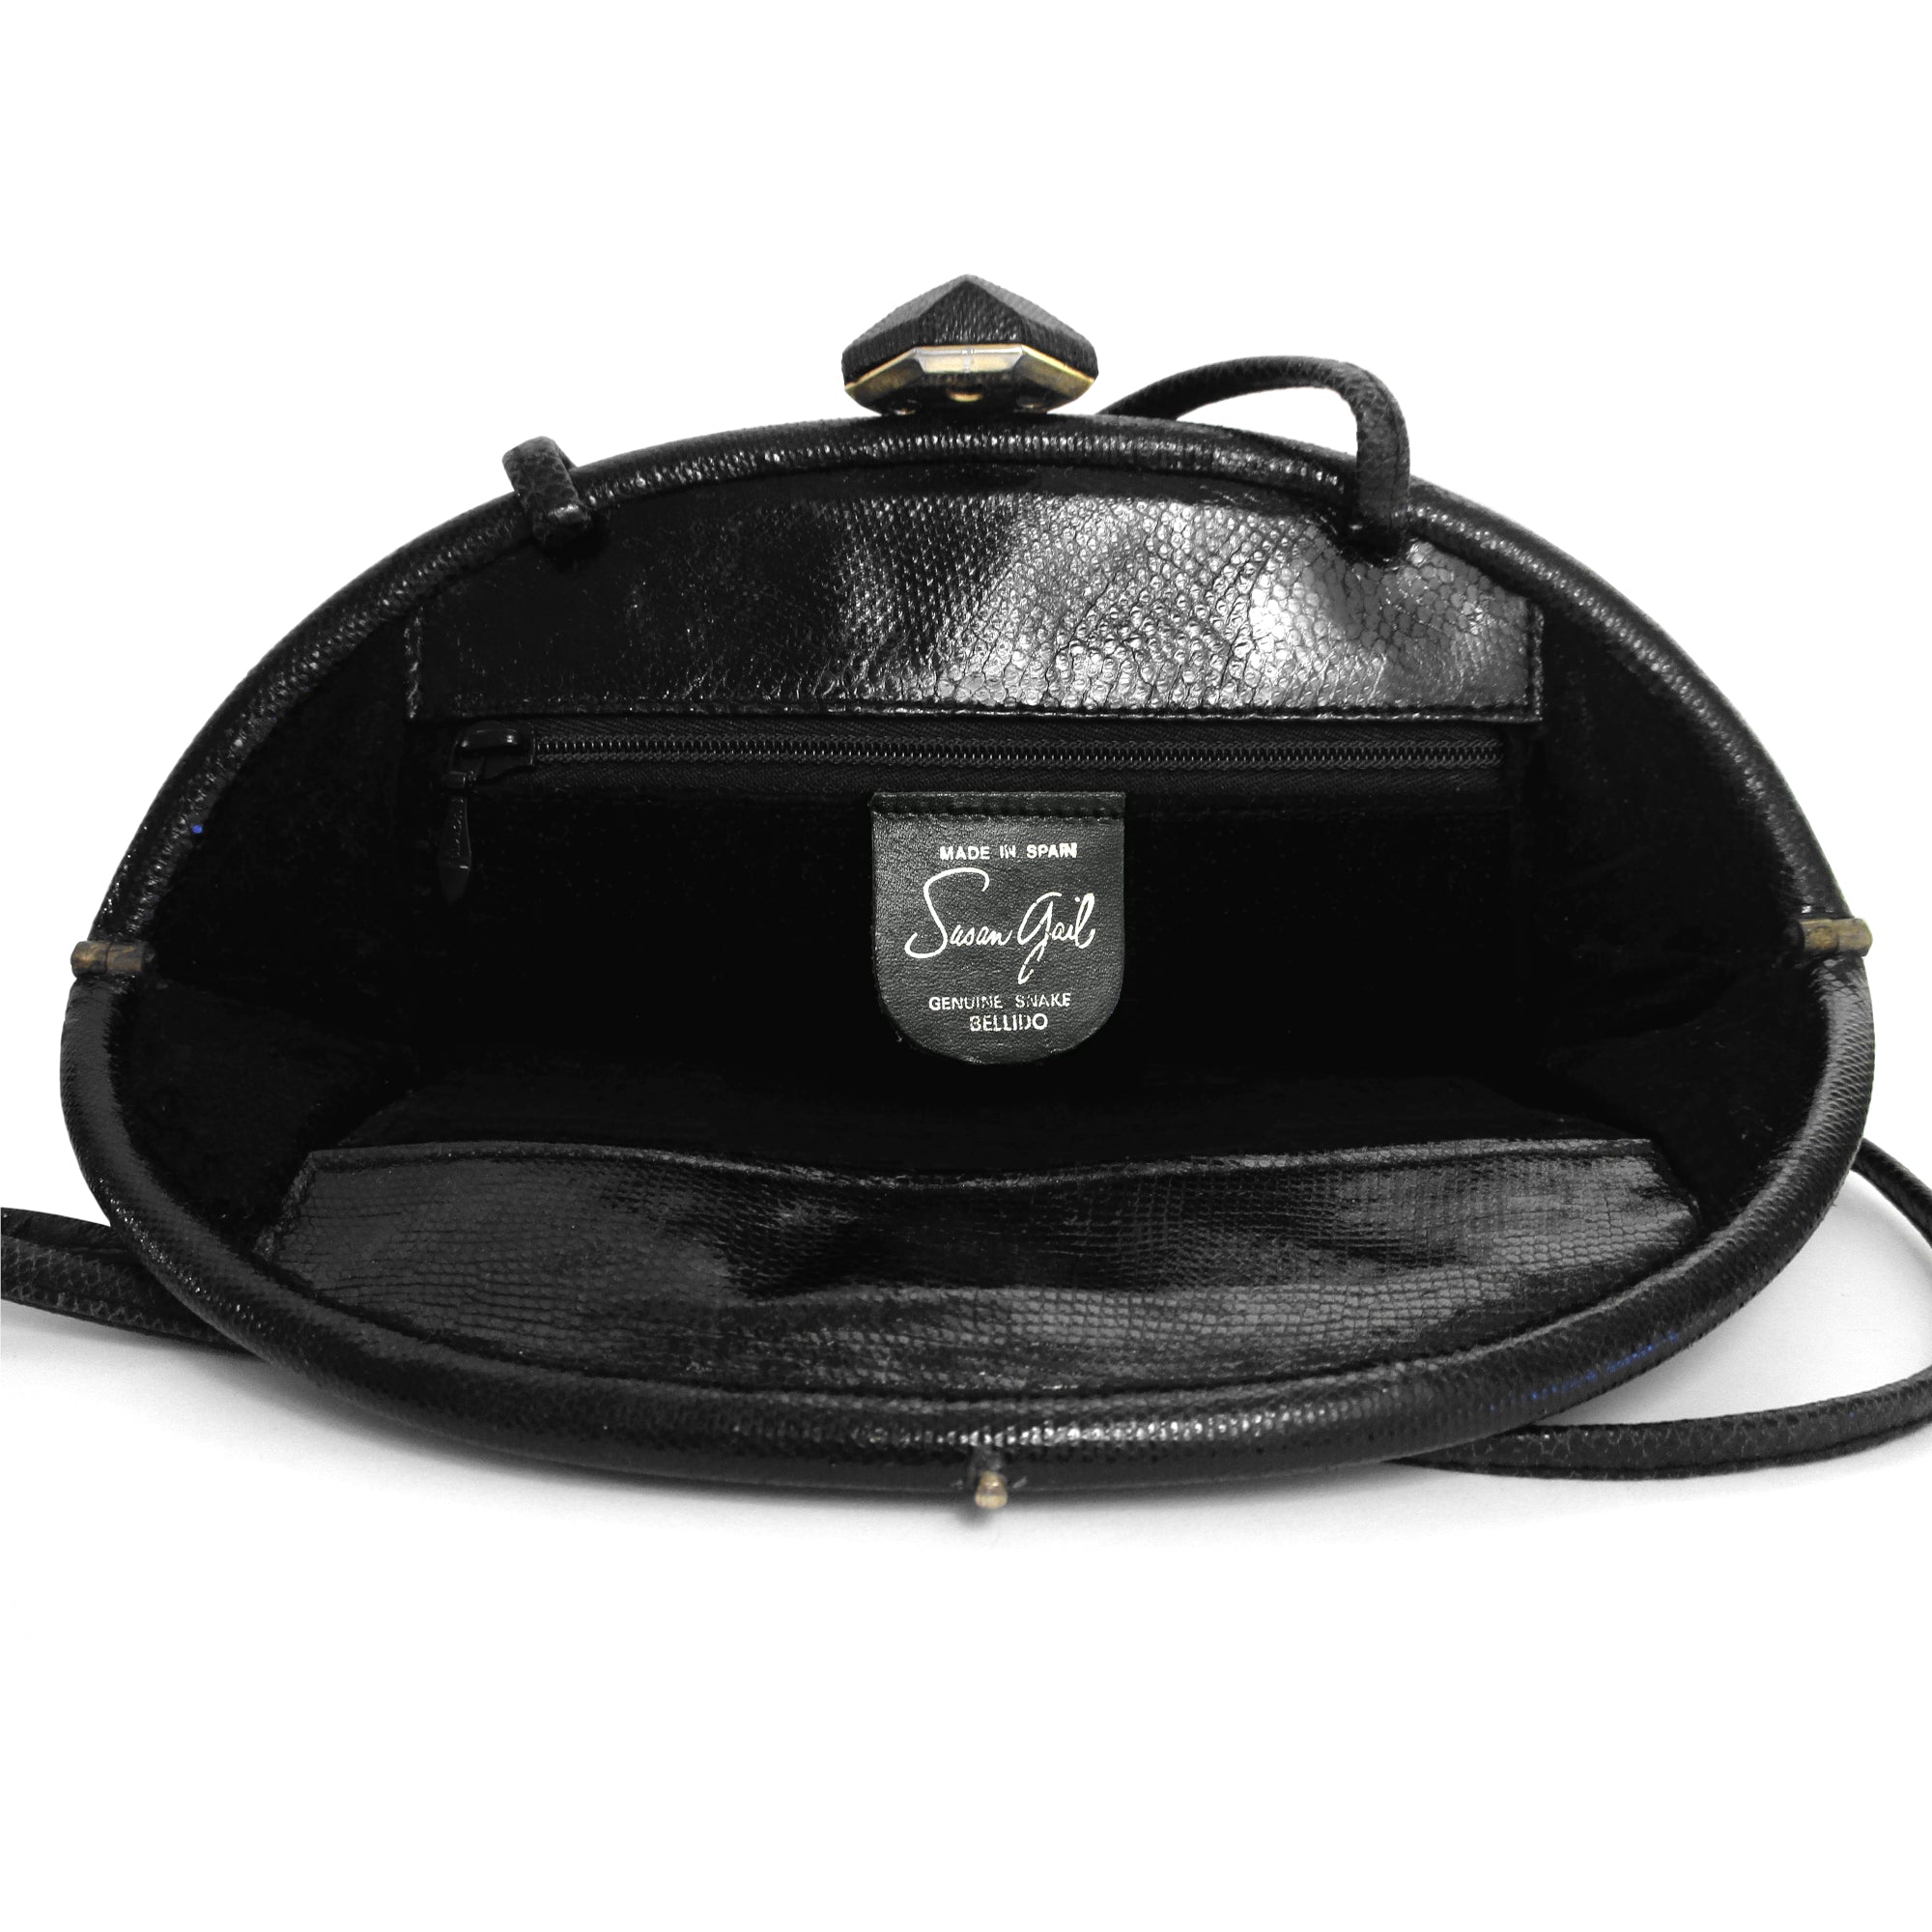 Fiorenza Italy | Bags | Fiorenza Italy Genuine Snakeskin Handbag Purse Navy  Guc | Poshmark